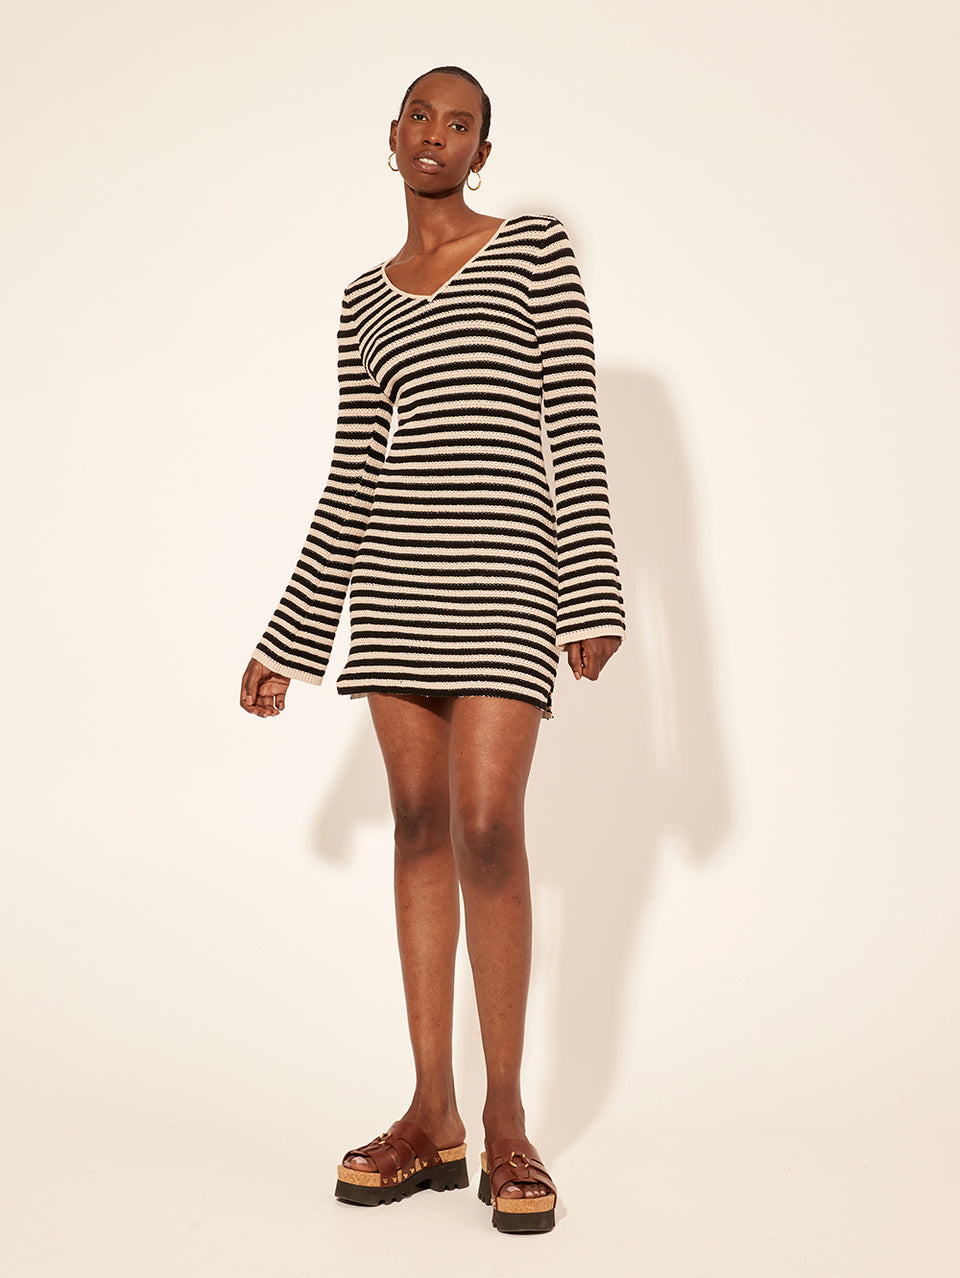 Anita Knit Mini Dress KIVARI | Model wears black and white stripe knit mini dress